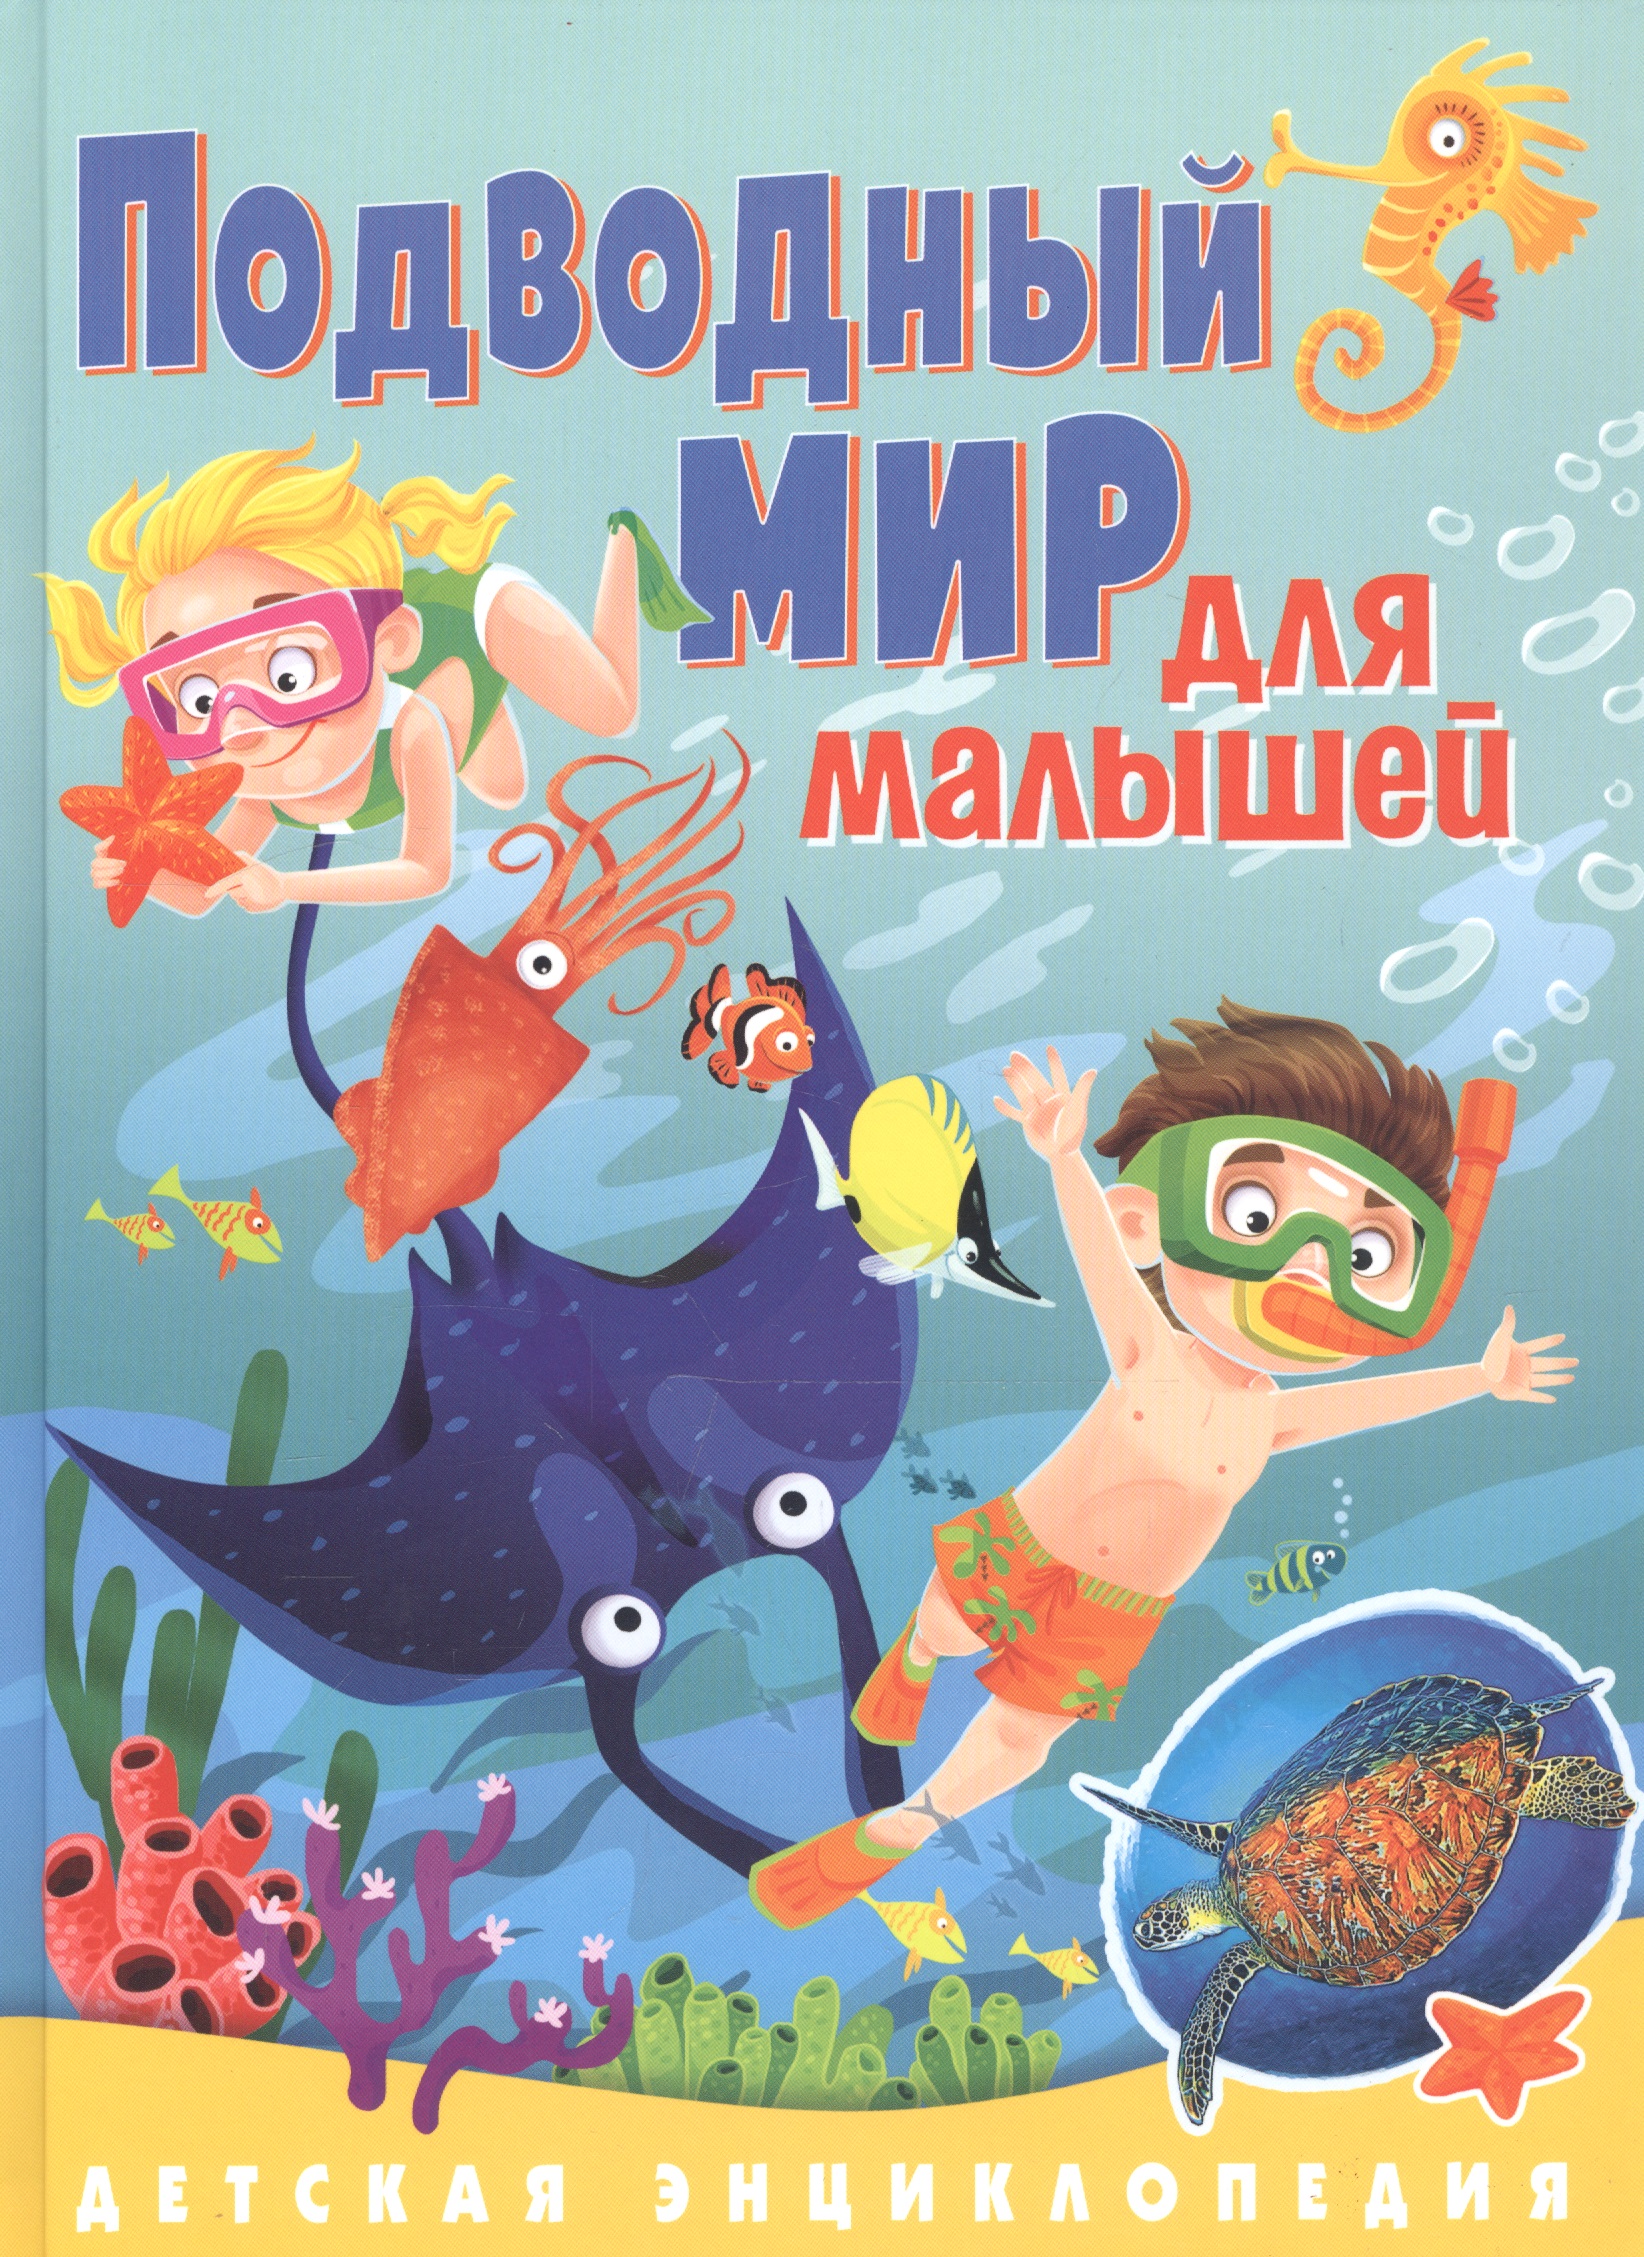 забирова анна викторовна подводный мир для малышей детская энциклопедия Подводный мир для малышей. Детская энциклопедия